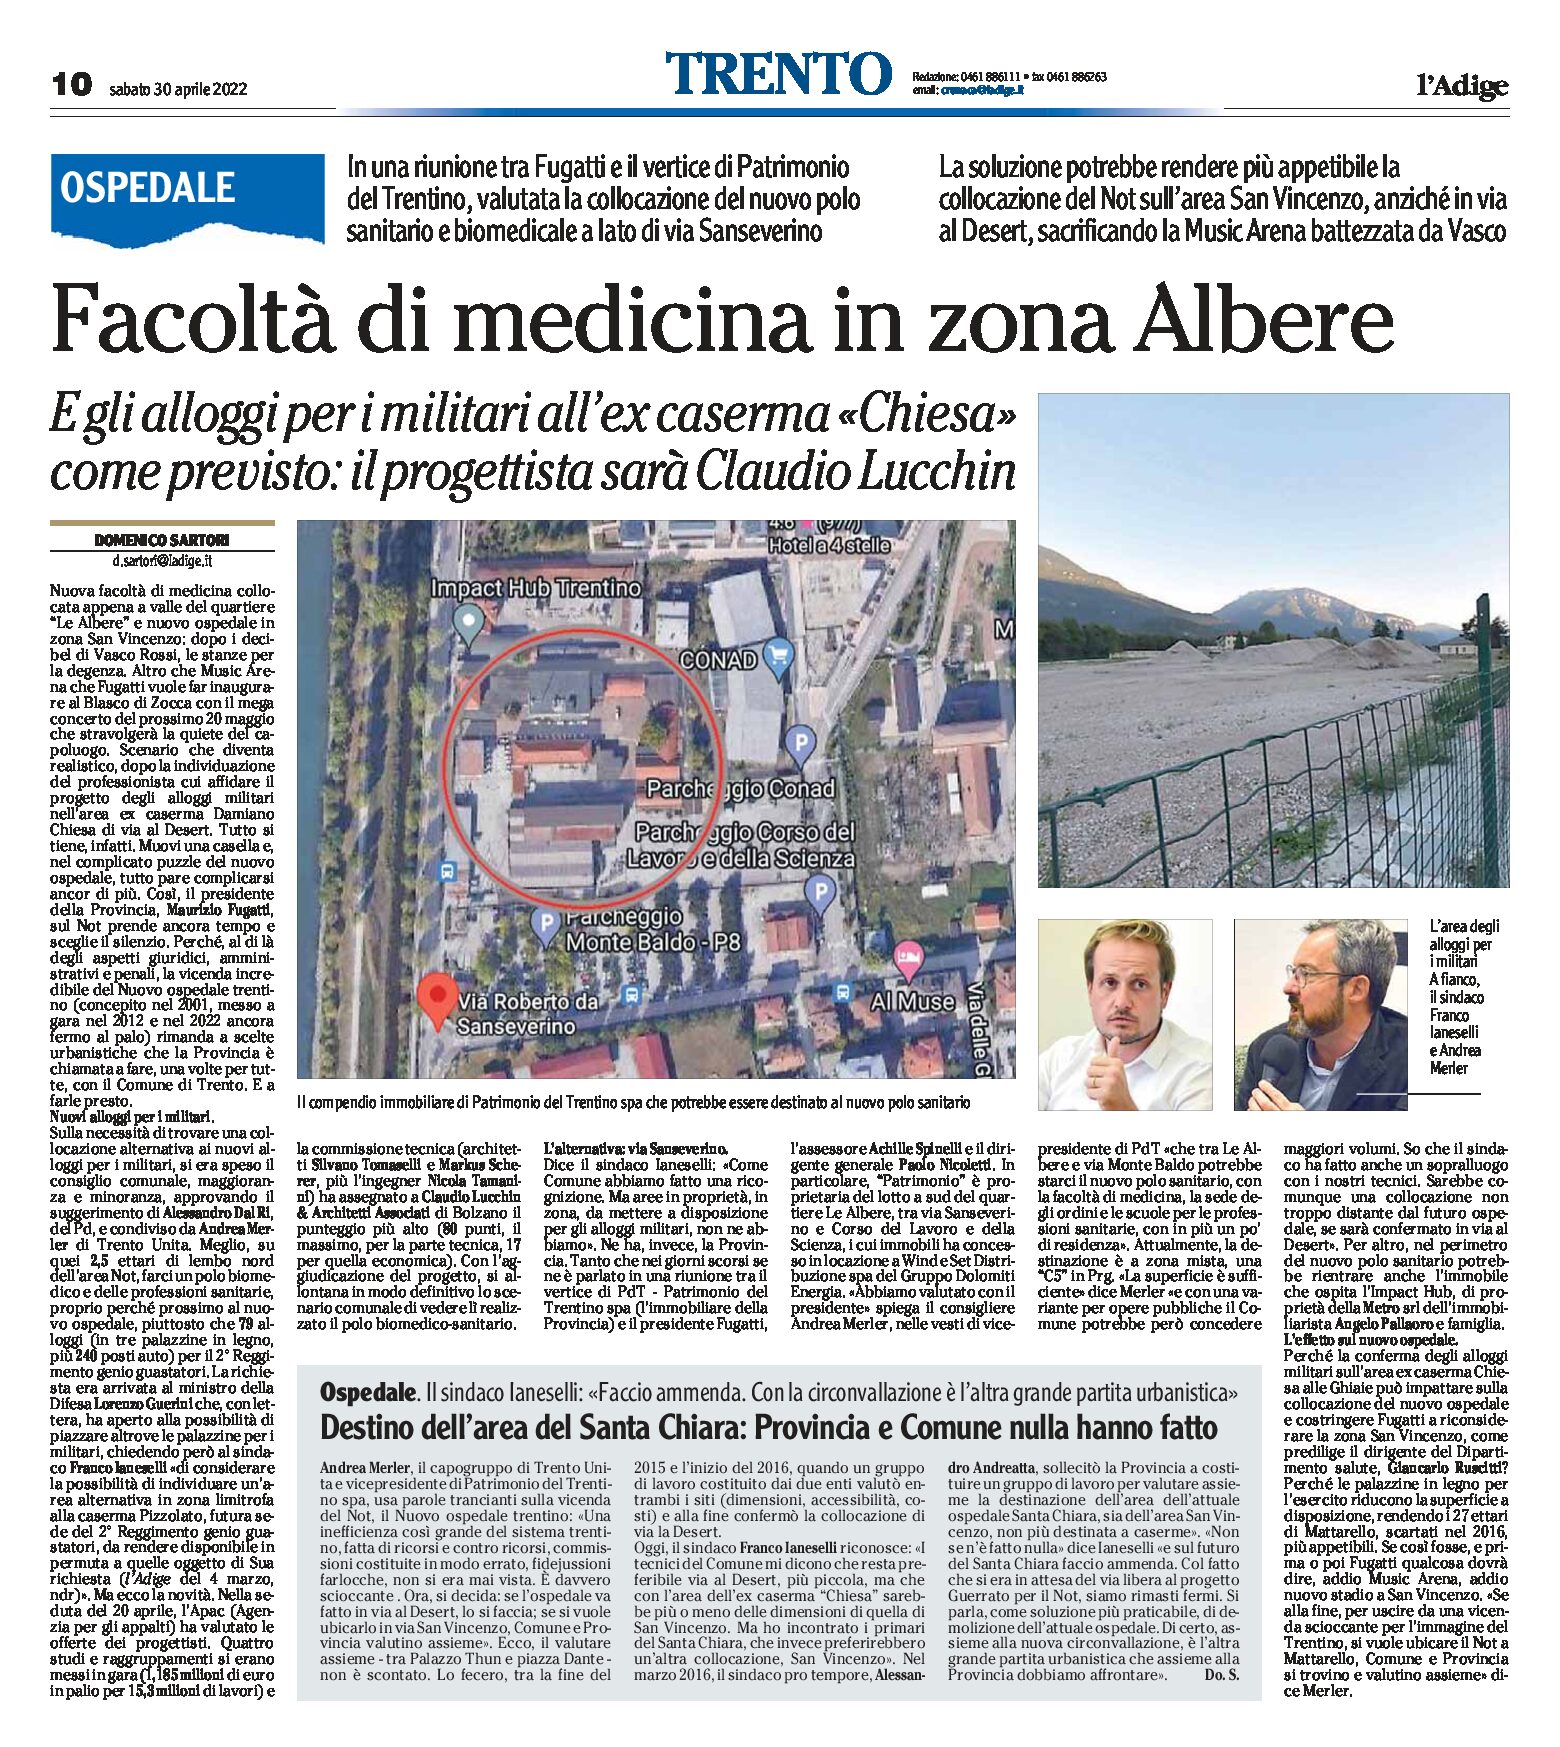 Trento: Facoltà di medicina in zona Albere